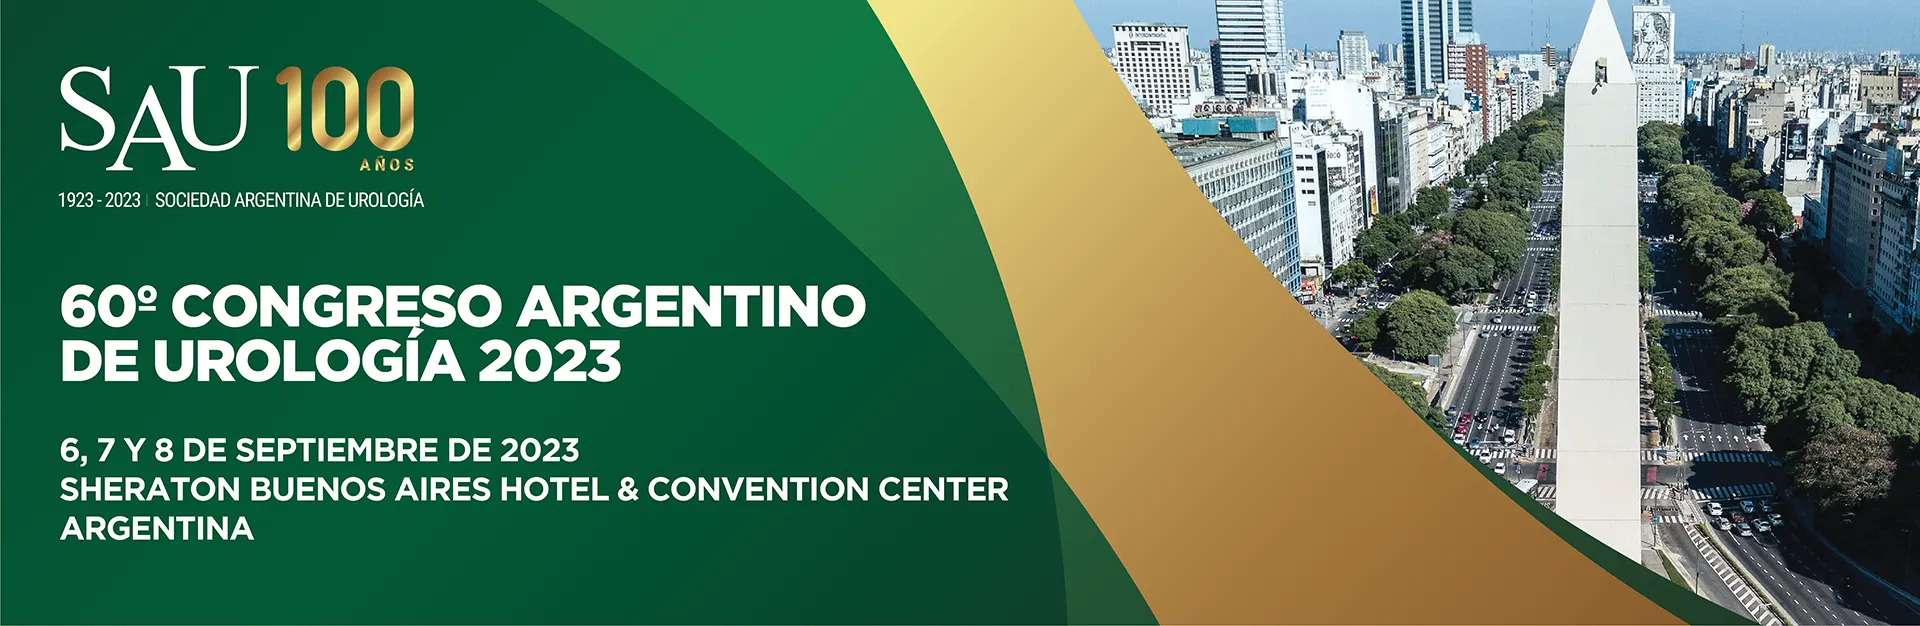 60° Congreso Argentino de Urología - SAU 2023. 6, 7 y 8 de septiembre de 2023. Sheraton Buenos Aires Hotel & Convention Center.